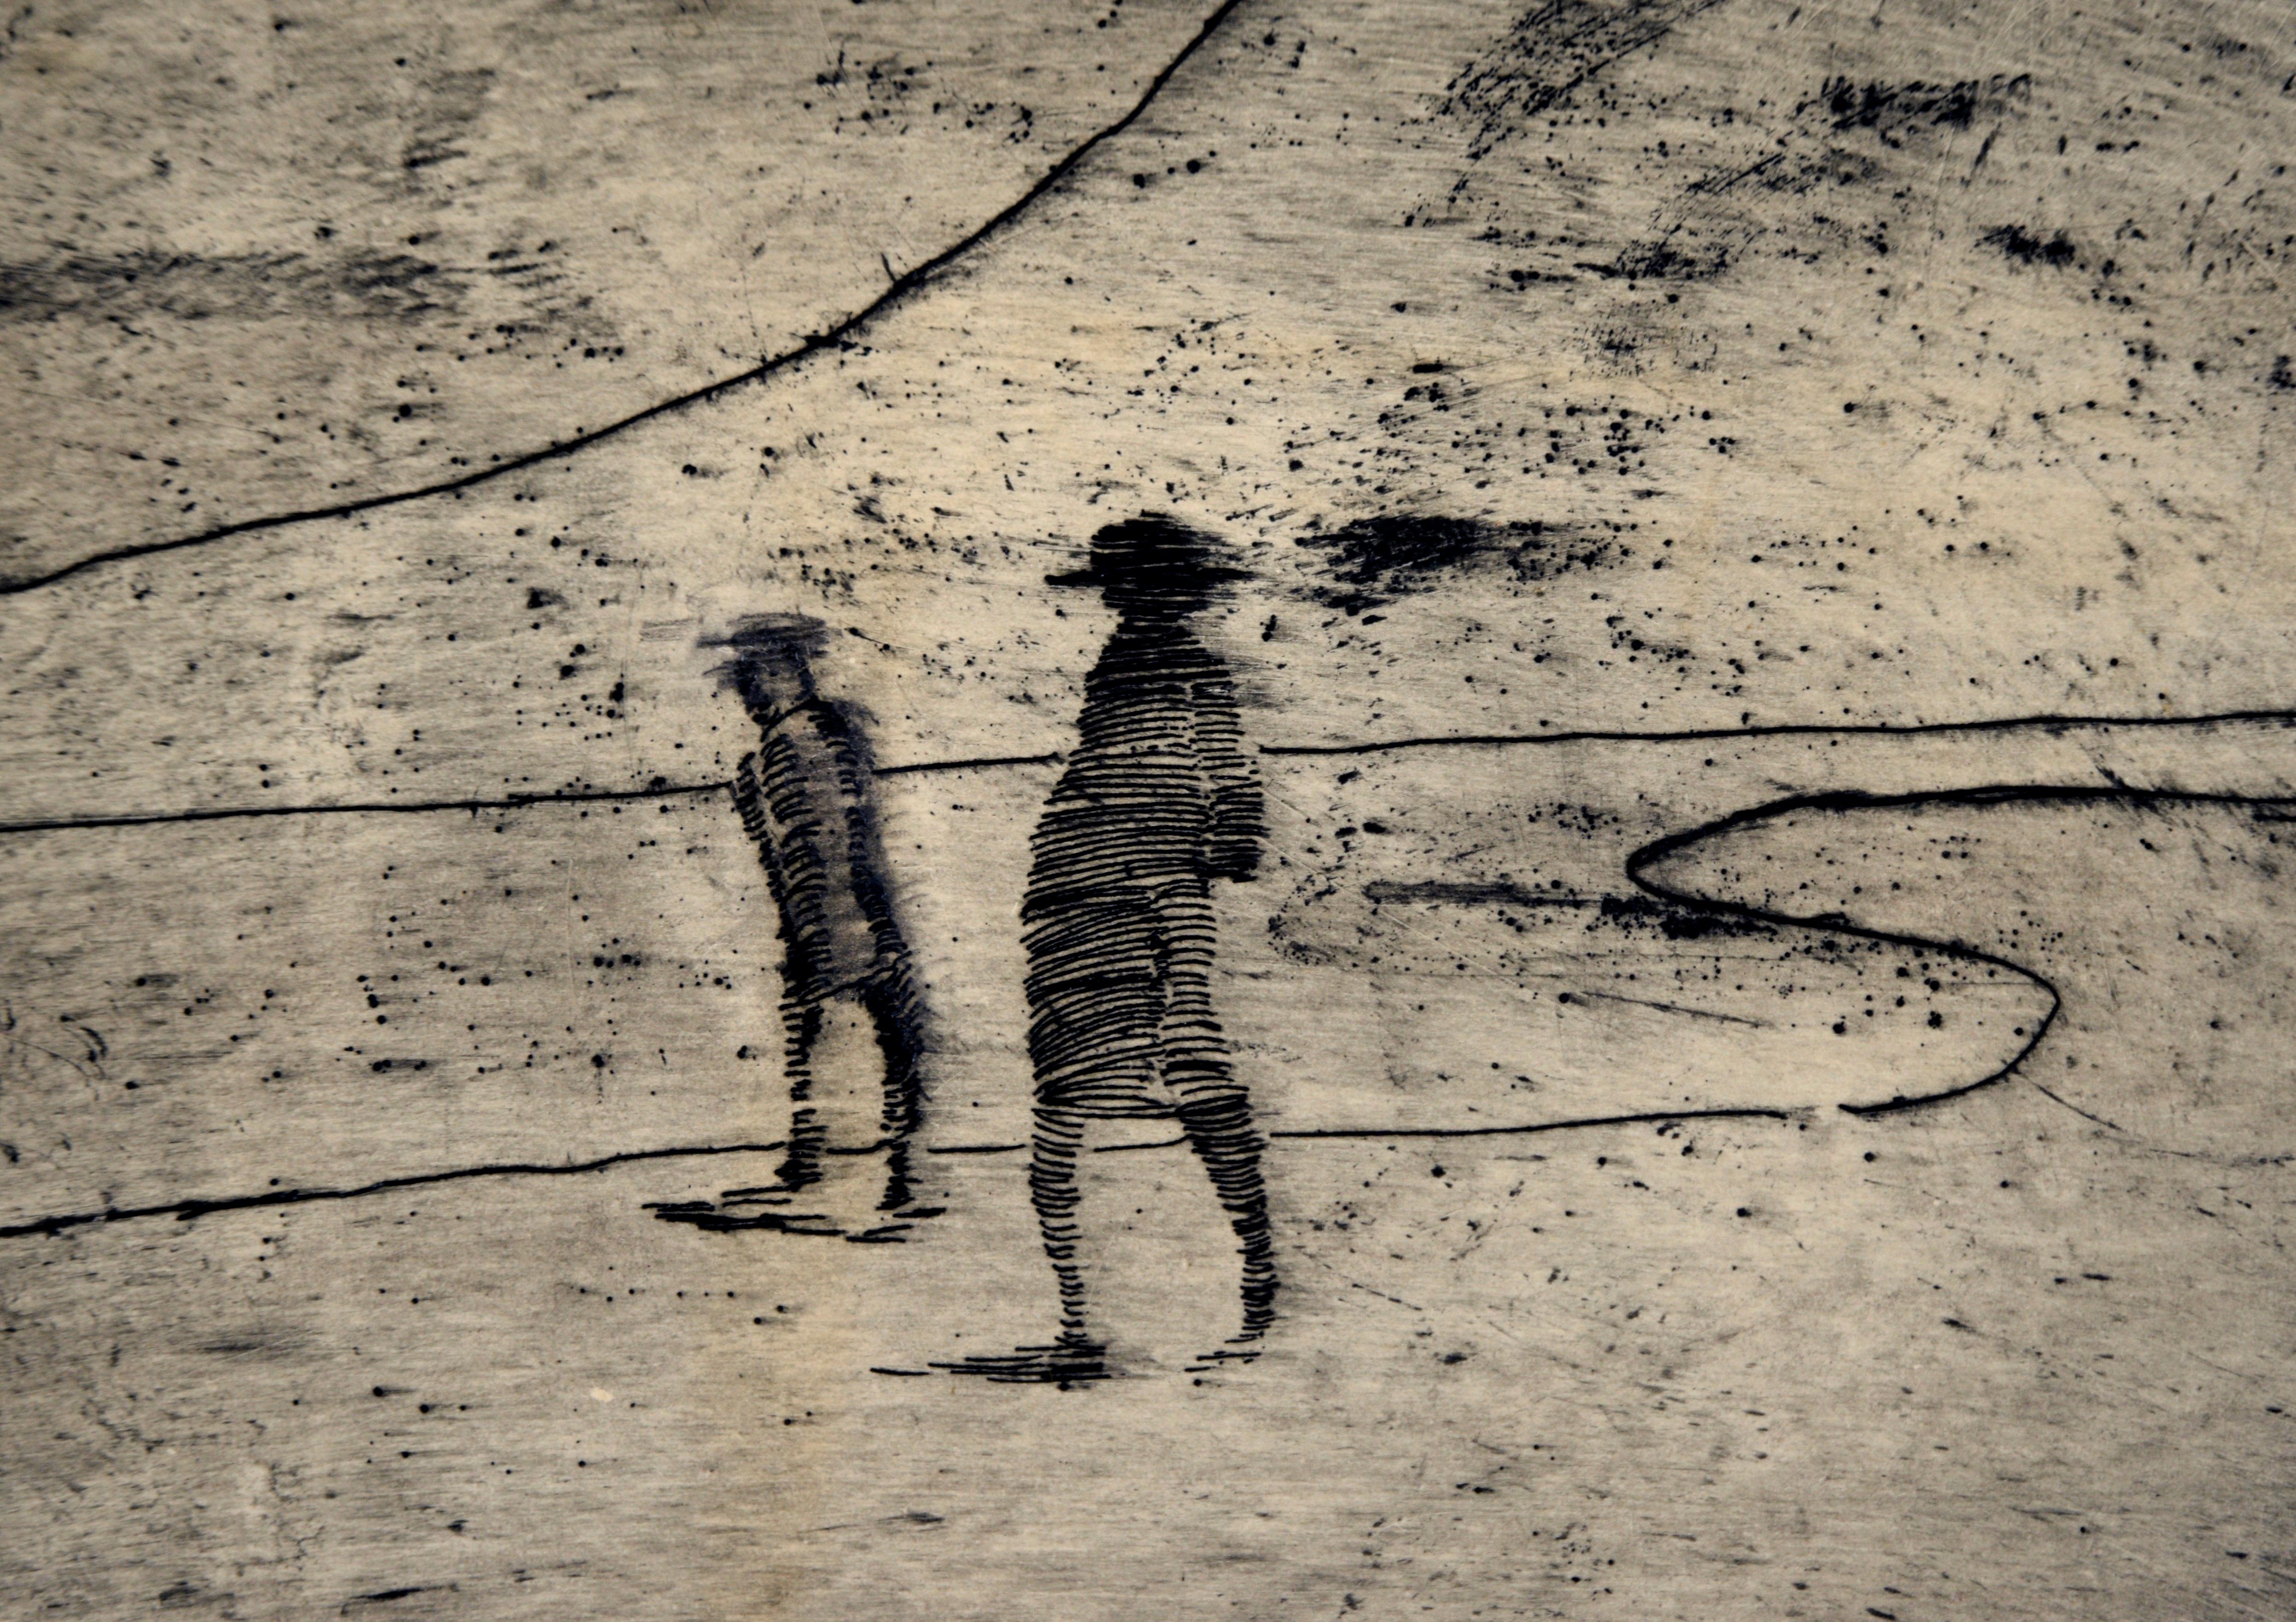 Minimalistische Landschaft mit zwei Figuren an der Shore – Kaltnadelradierung in Tinte auf Papier
Minimalistische Landschaft mit zwei Figuren, die am Ufer entlang gehen, von Doris Ann Warner (Amerikanerin, 1925-2010). Zwei Personen sind mit einer